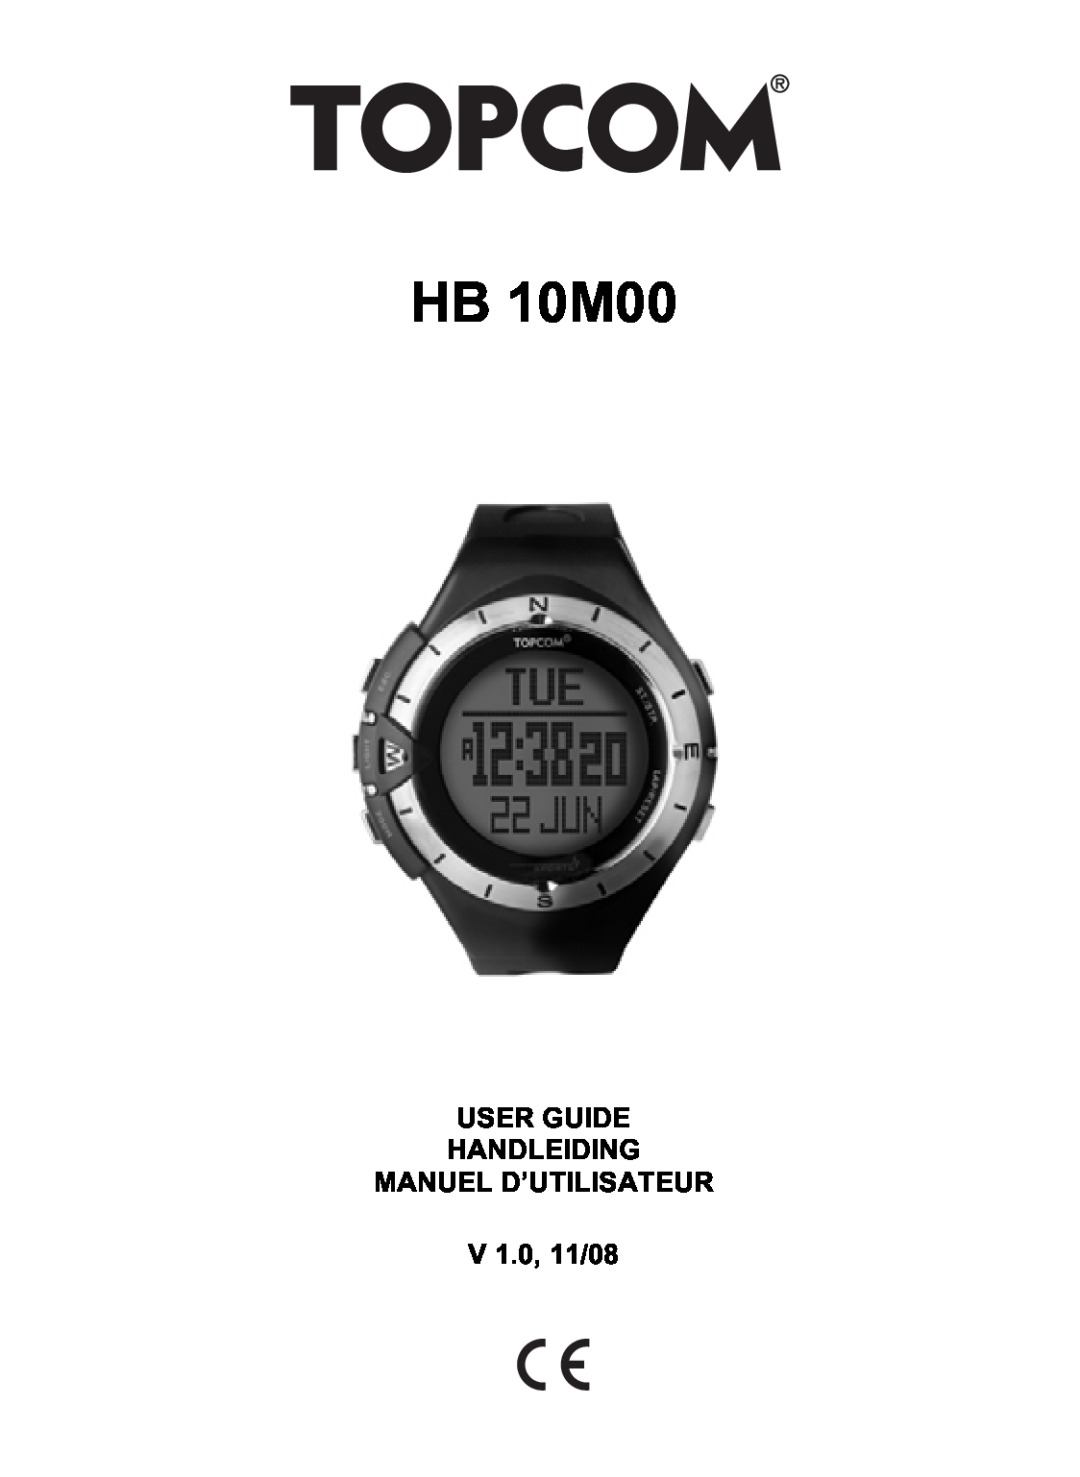 Topcom HB 10M00 manual User Guide Handleiding Manuel D’Utilisateur, V 1.0, 11/08 